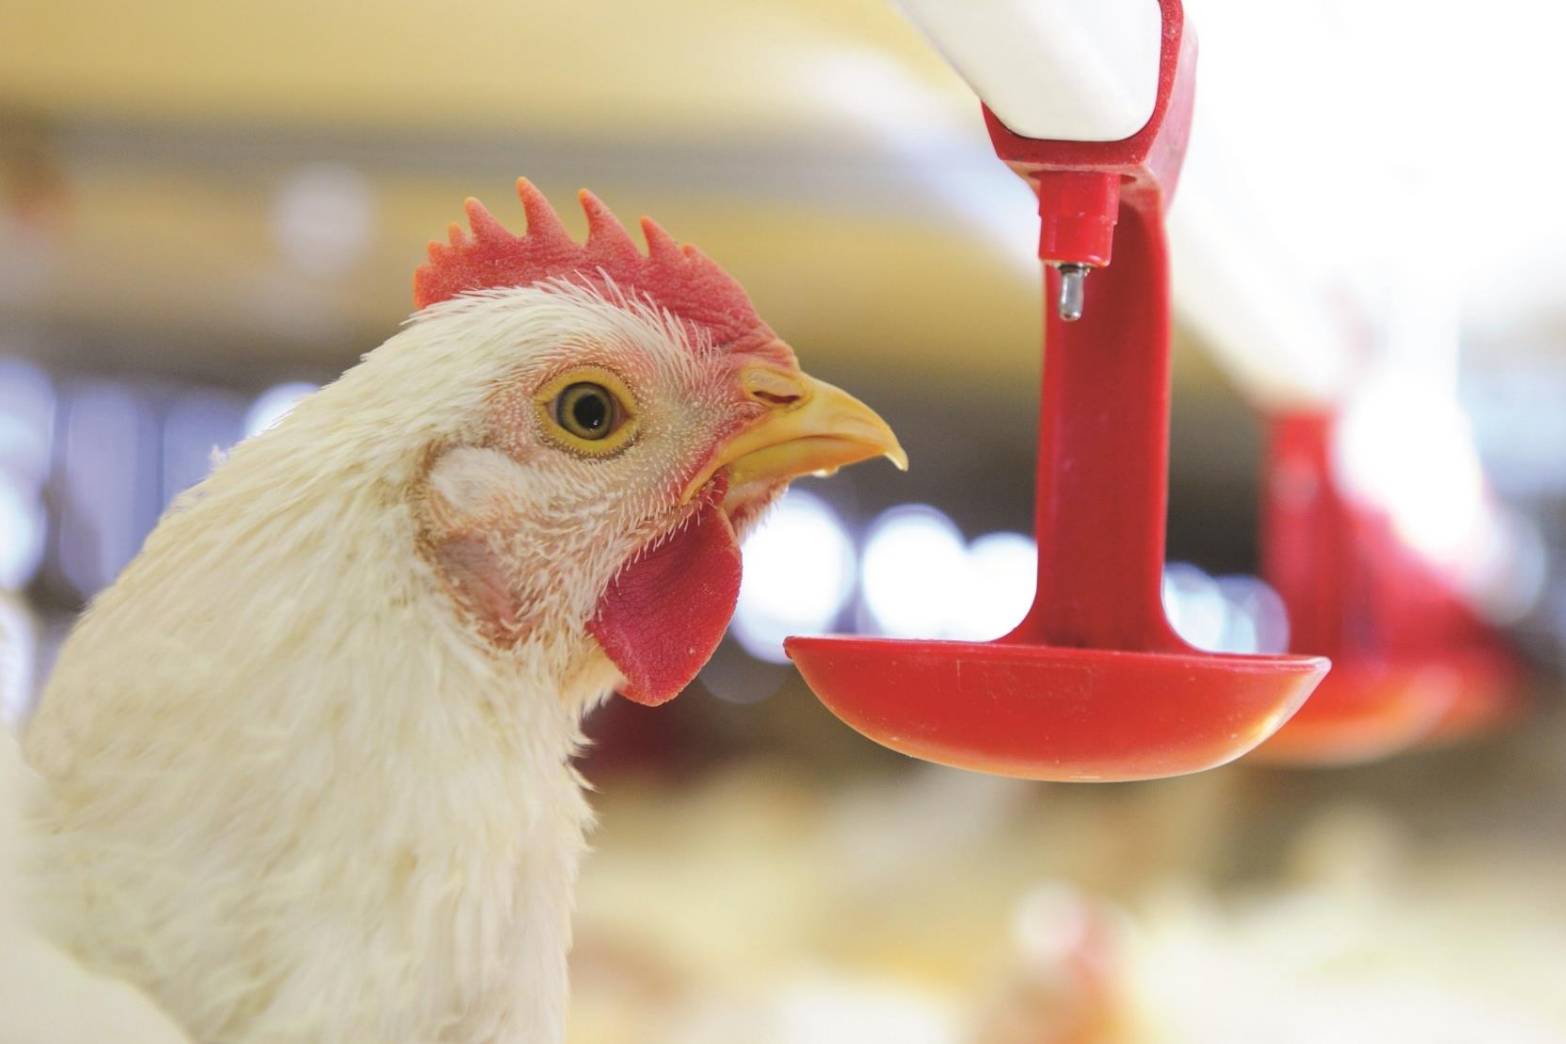 CPF ได้รับรอง LR Farm F1rst ตอกย้ำการผลิตไก่เนื้อคำนึงถึงหลักสวัสดิภาพสัตว์ สร้างความมั่นคงทางอาหาร